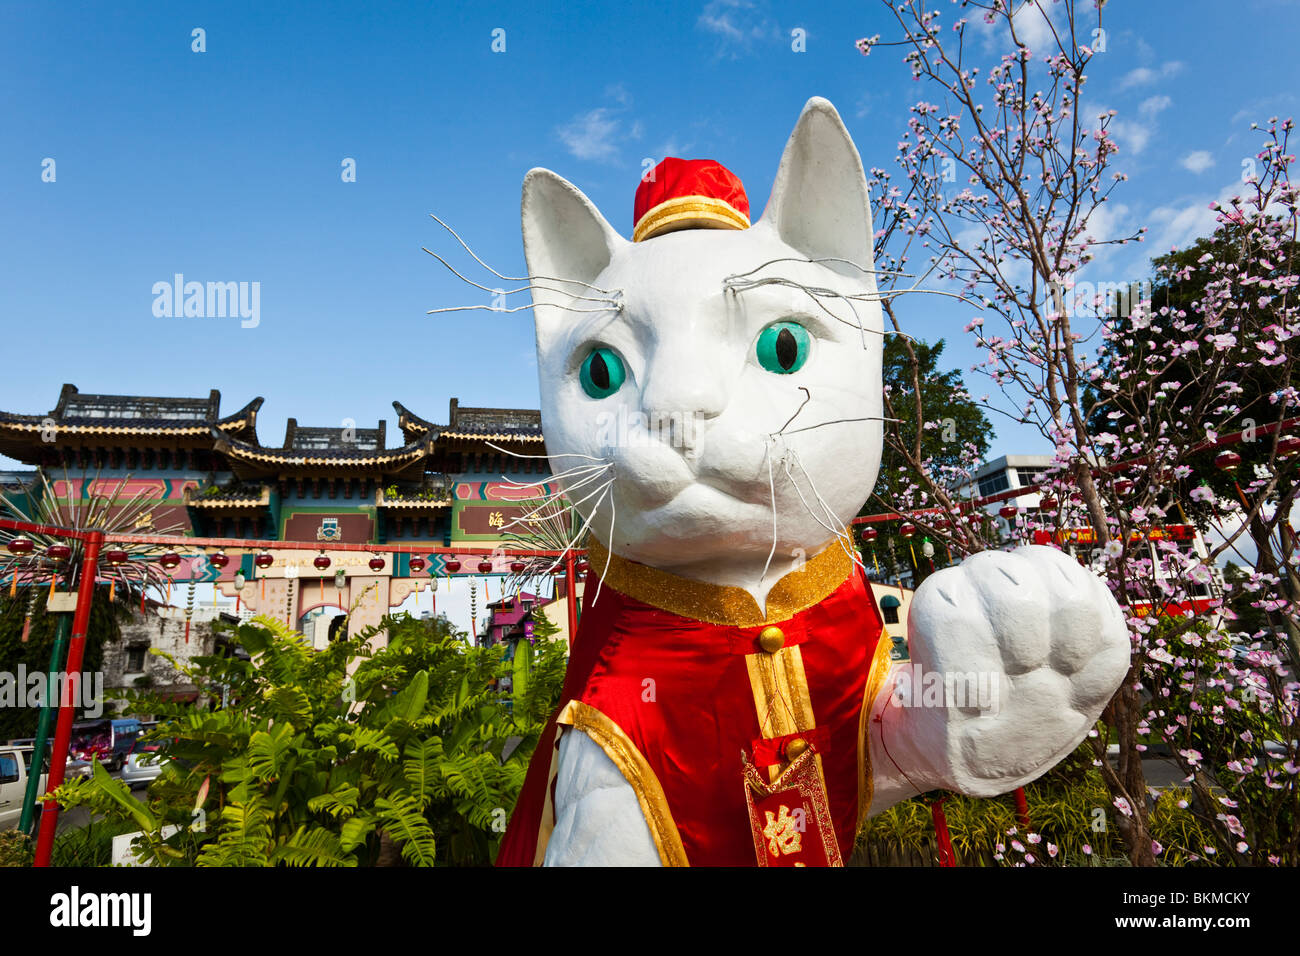 Le grand chat de Kuching monument décoré pour le Nouvel An chinois. Kuching, Sarawak, Bornéo, Malaisie. Banque D'Images